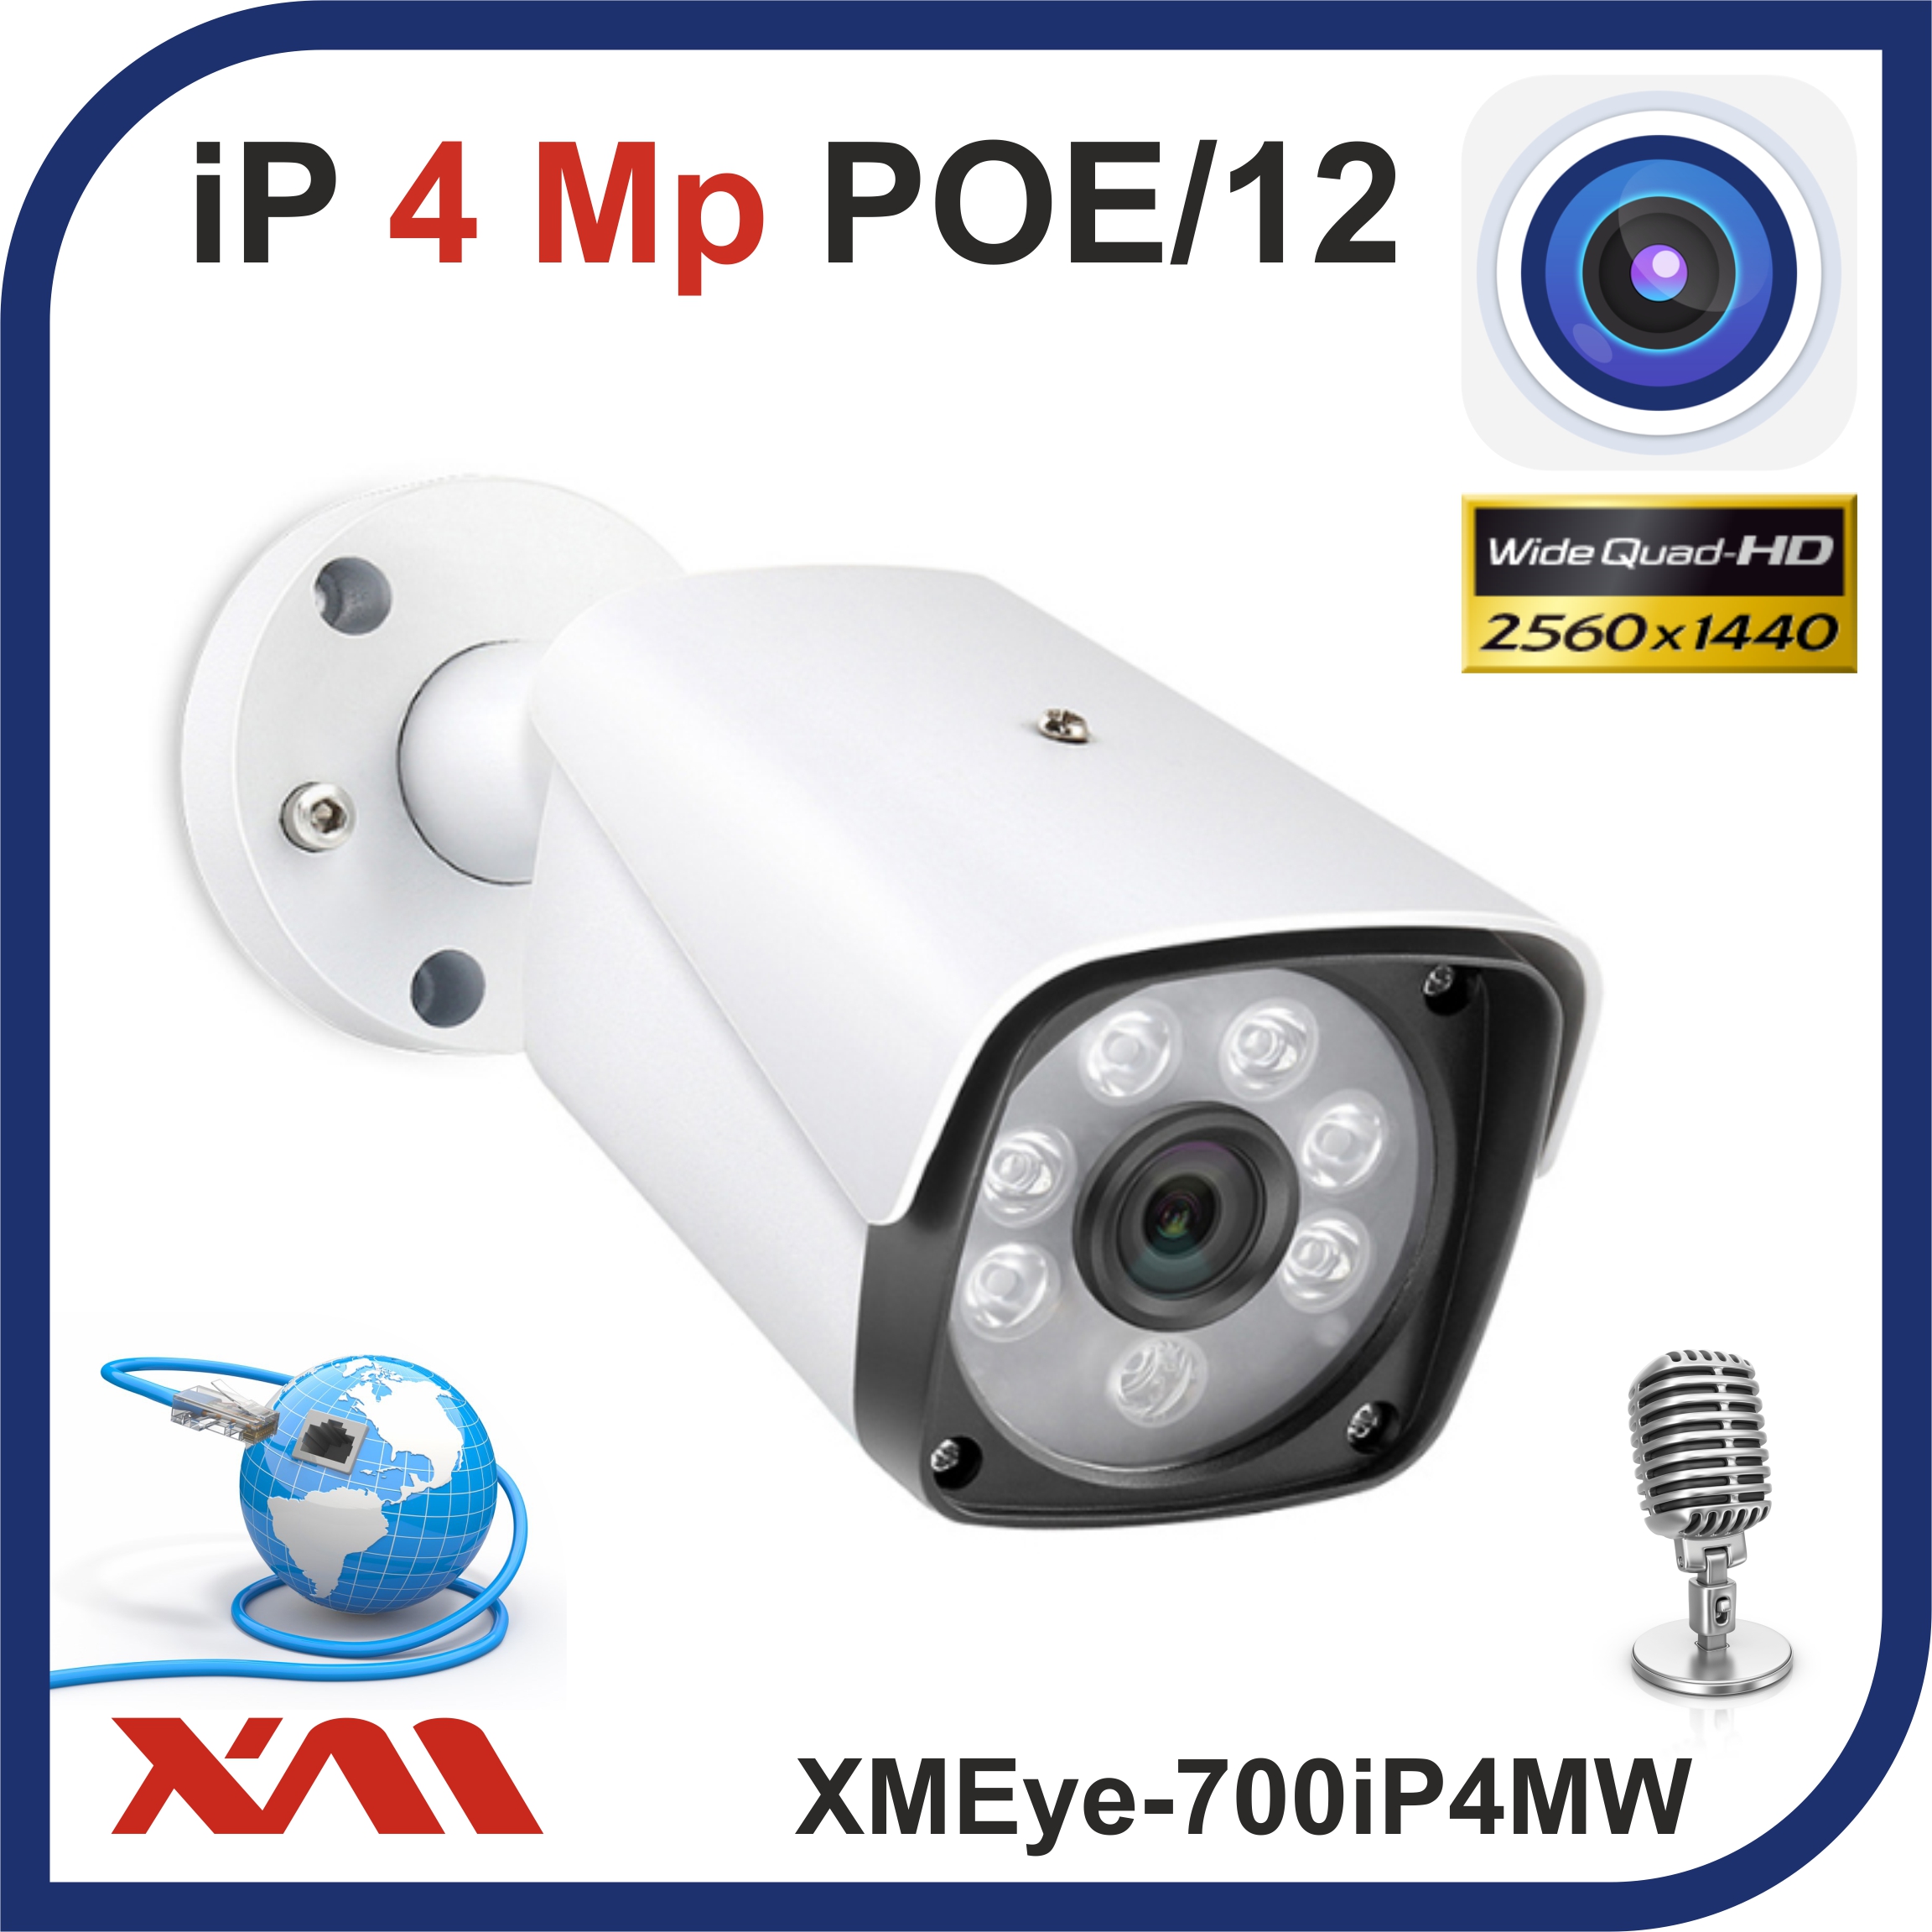 Камера видеонаблюдения XMEye 700IP4MW-2,8 уличная IP 1440P 4Mpx POE/12 камера видеонаблюдения уличная мультиформатная 2160p 8mpx xmeye 700ahd8mw 2 8